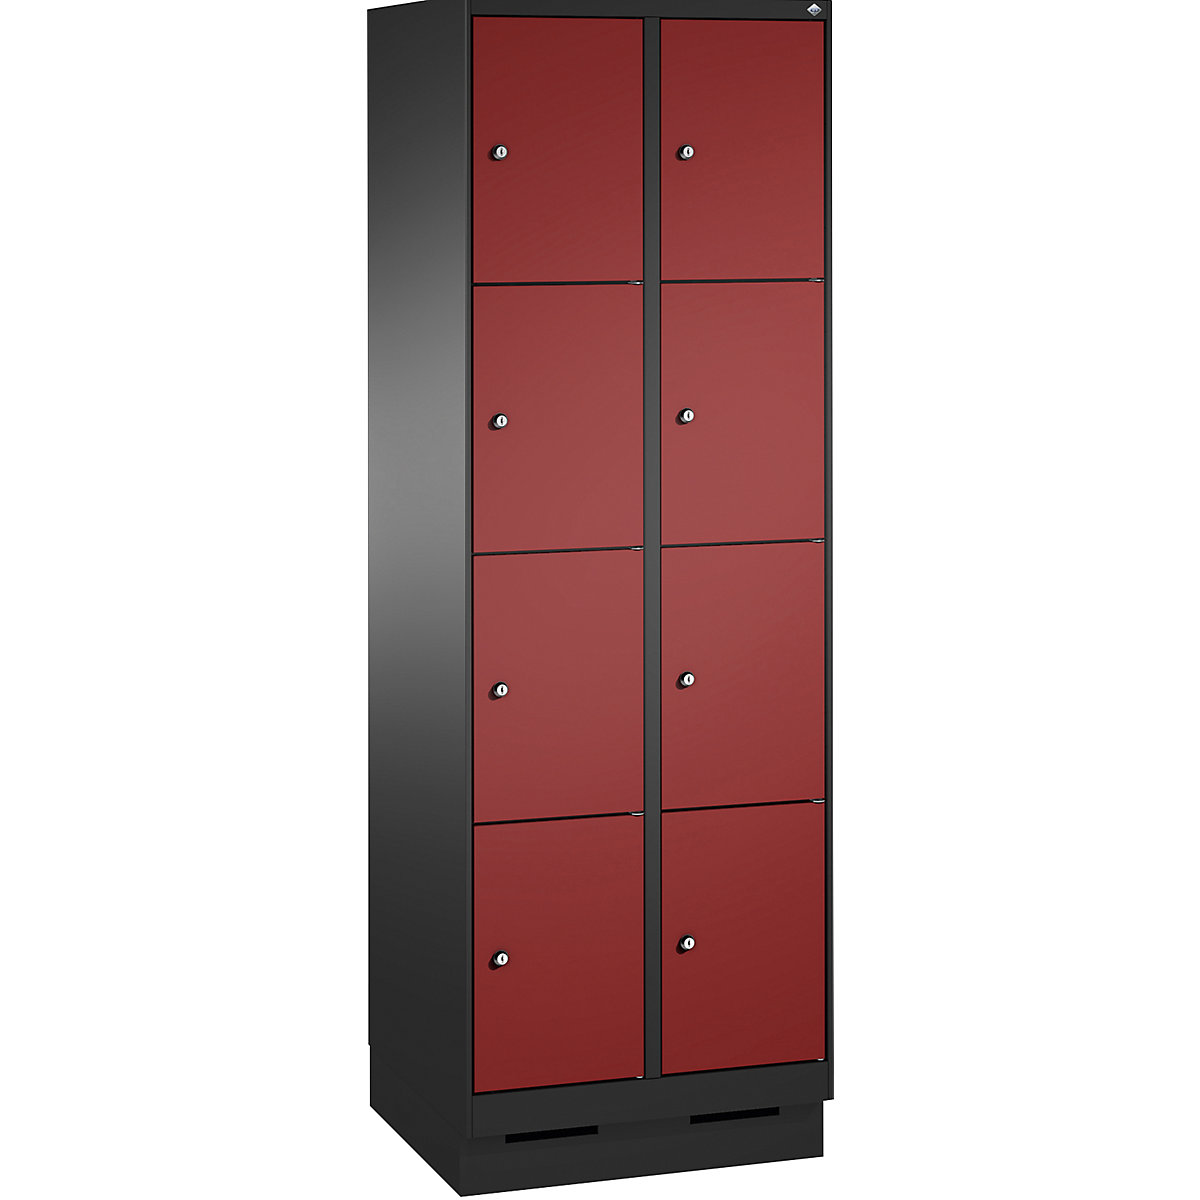 Armoire à casiers sur socle EVOLO – C+P, 2 compartiments, 4 casiers chacun, largeur compartiments 300 mm, gris noir / rouge rubis-5